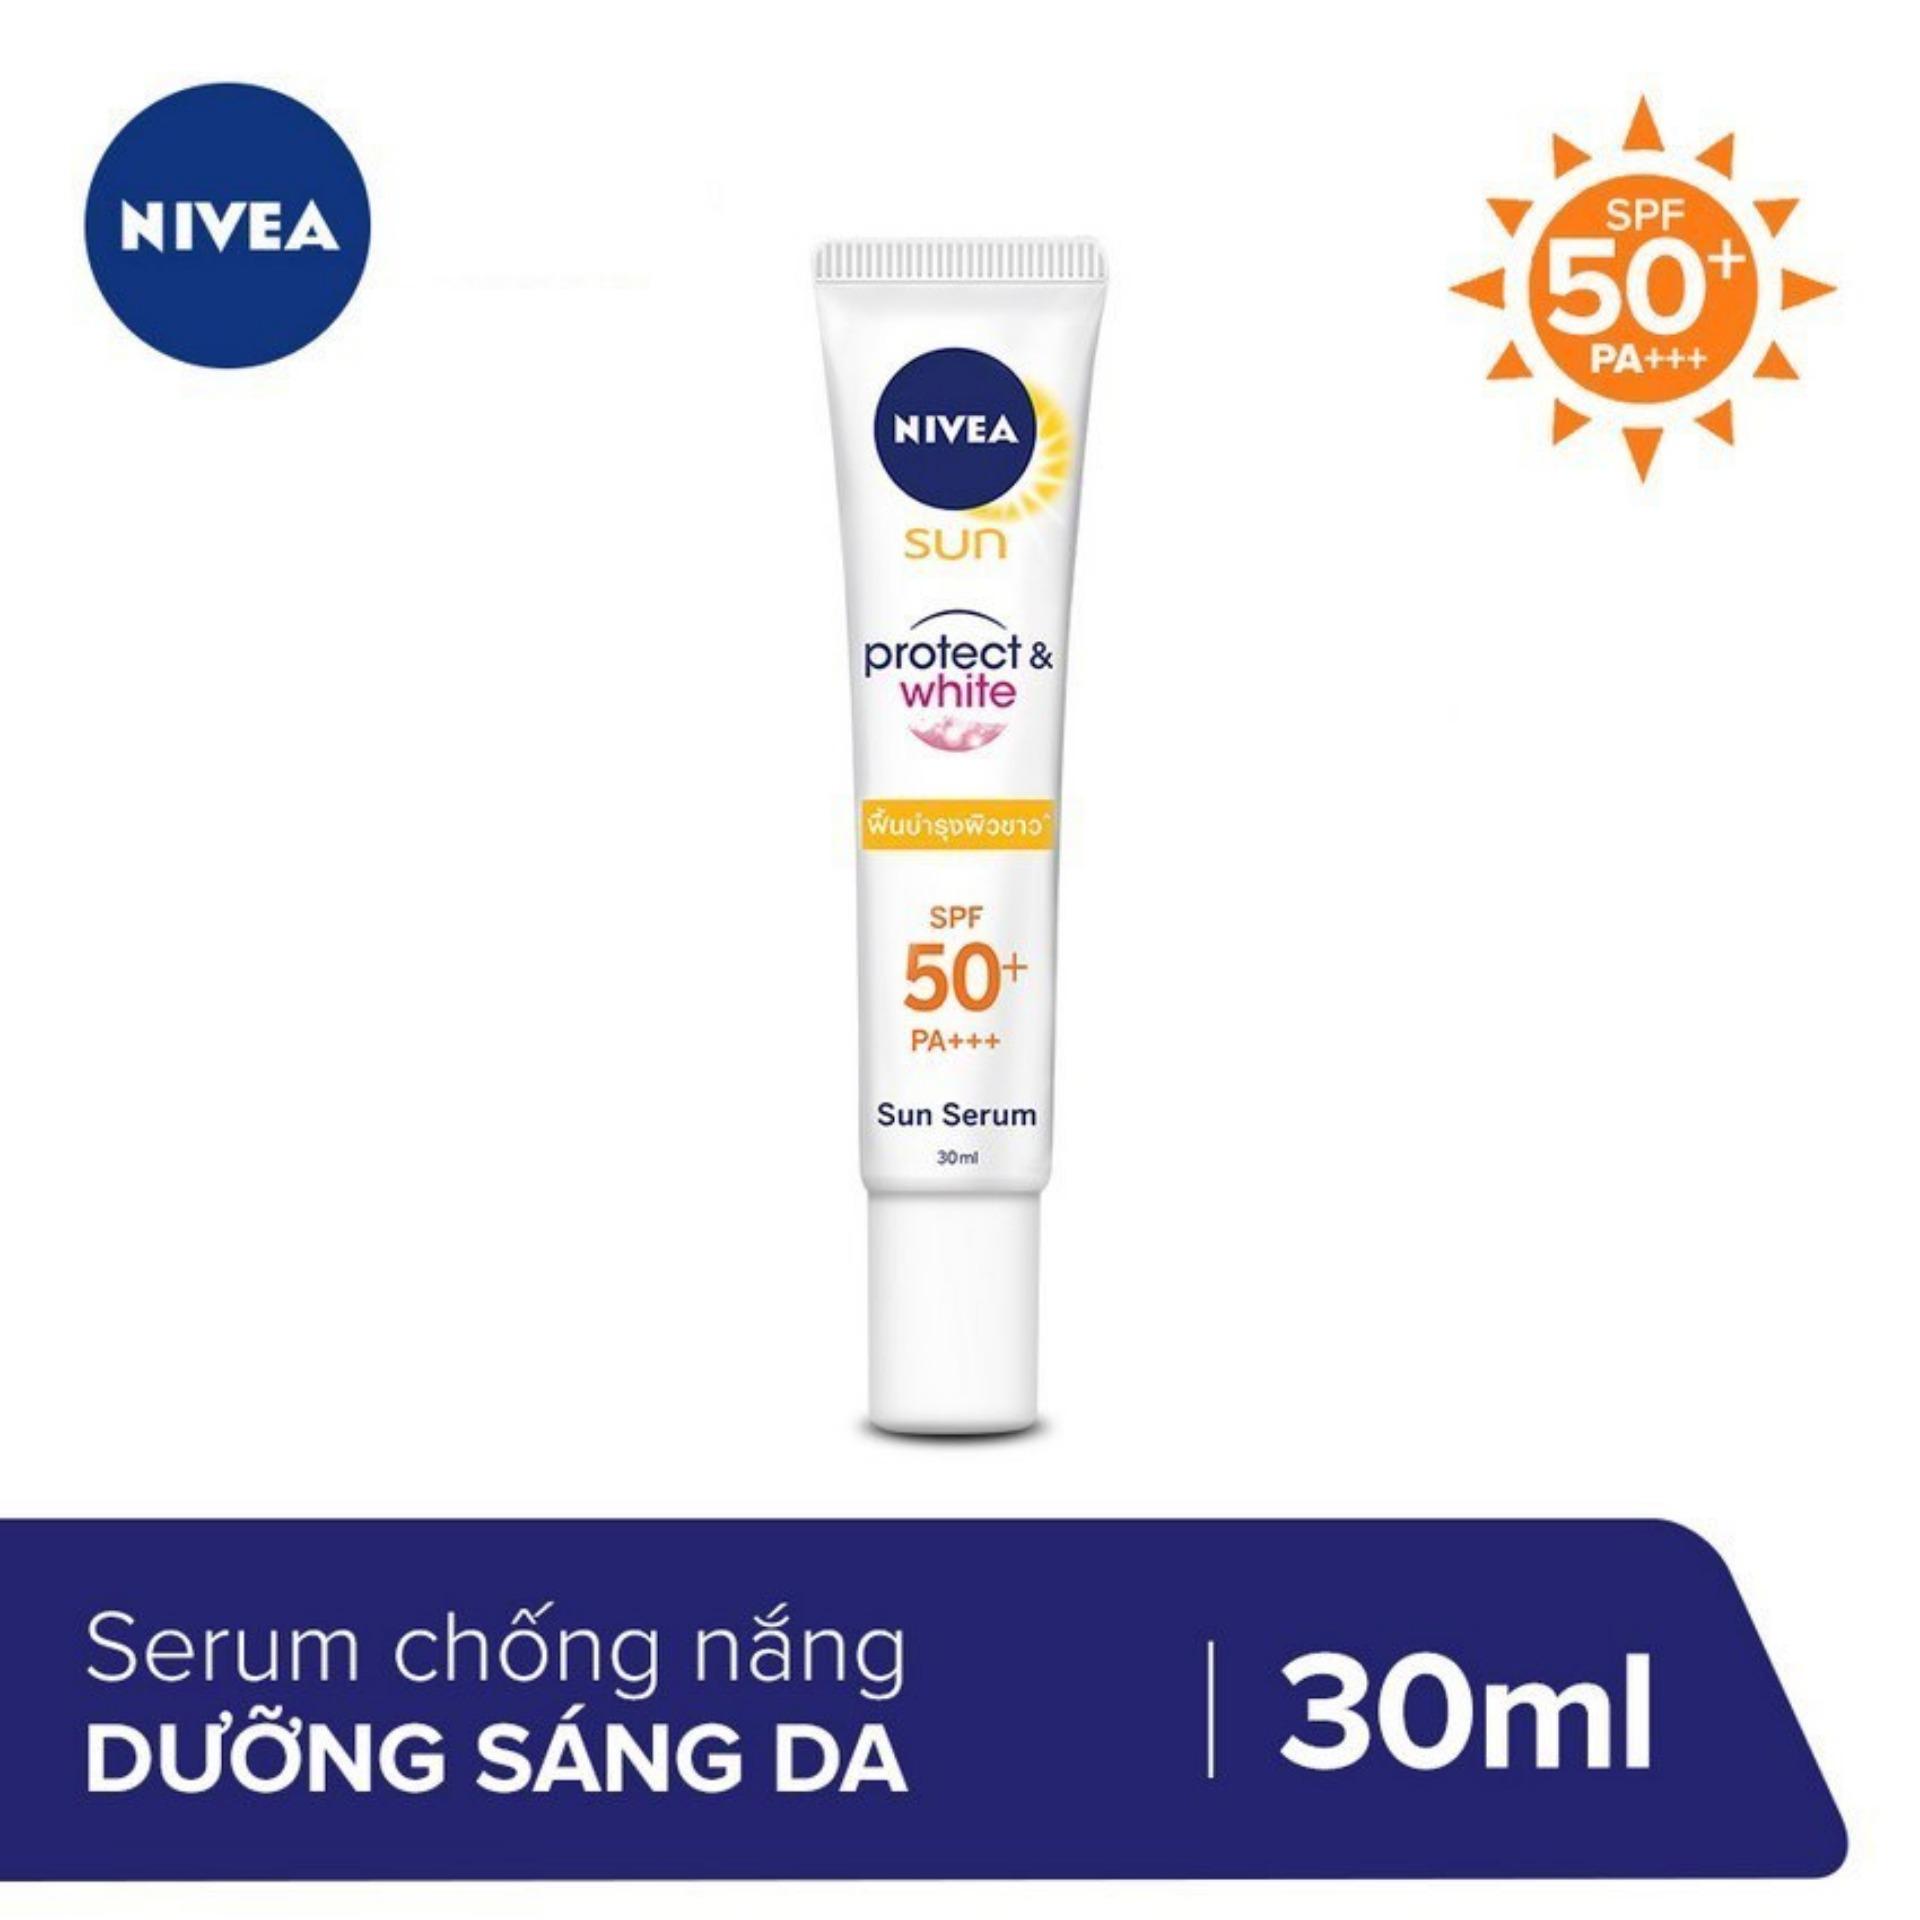 Tinh chất chống nắng và dưỡng trắng Nivea Protect & White SPF50 PA+++ 30ml _ 86016